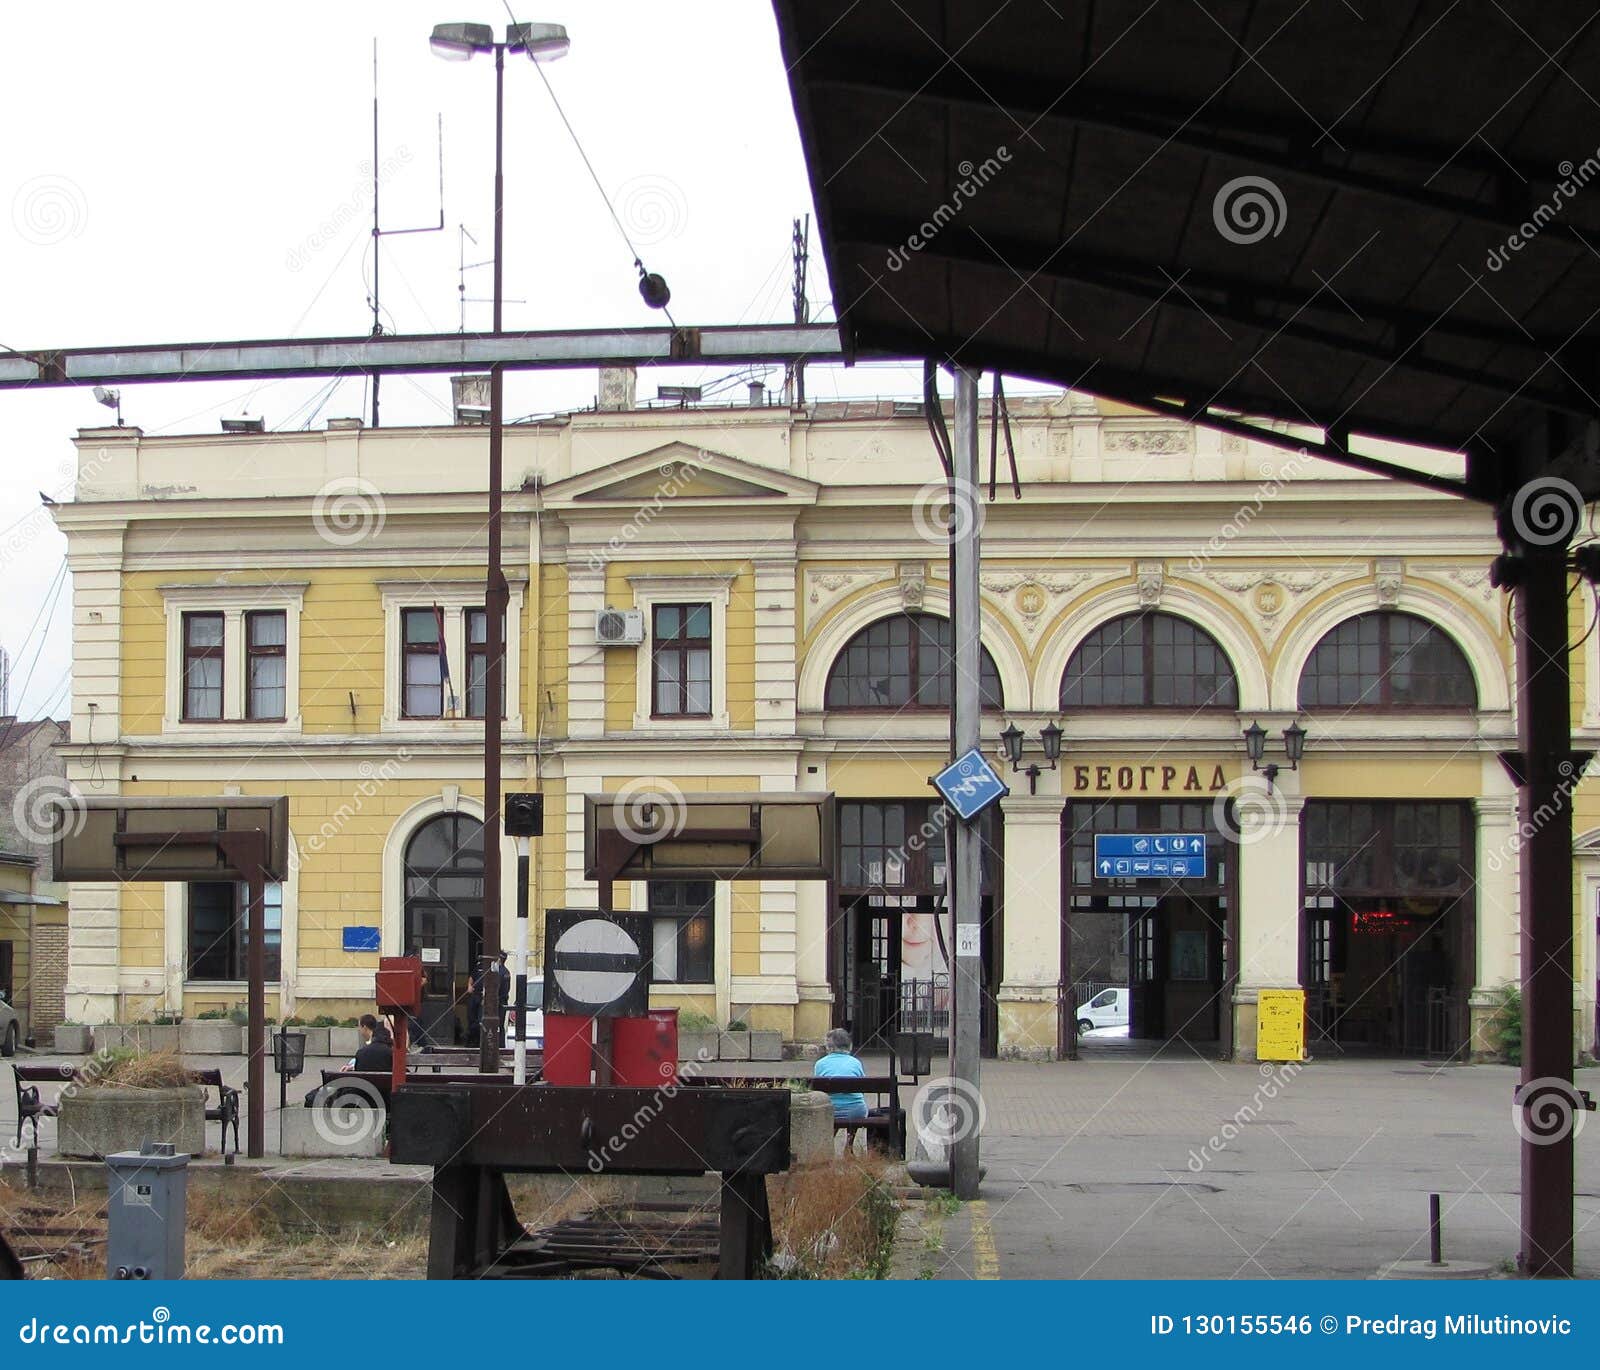 Vieille gare ferroviaire à Belgrade. La gare ferroviaire principale de Belgrade était une station de train à Belgrade, la capitale de la Serbie Il a été construit entre 1882 et 1885 après les conceptions du ‡ de Dragutin MilutinoviÄ d'architecte, et il a le statut d'un monument ultural de  de Ñ de grande importance Jusqu'à s'ouvrir de la nouvelle station Prokop de centre de Belgrade en 2016, c'était la station principale de la ville, et la station de train la plus occupée dans le pays Afin de libérer l'espace pour le projet de bord de mer de Belgrade, la station a été fermée le 1er juillet 2018, et repurposed pour devenir un musée